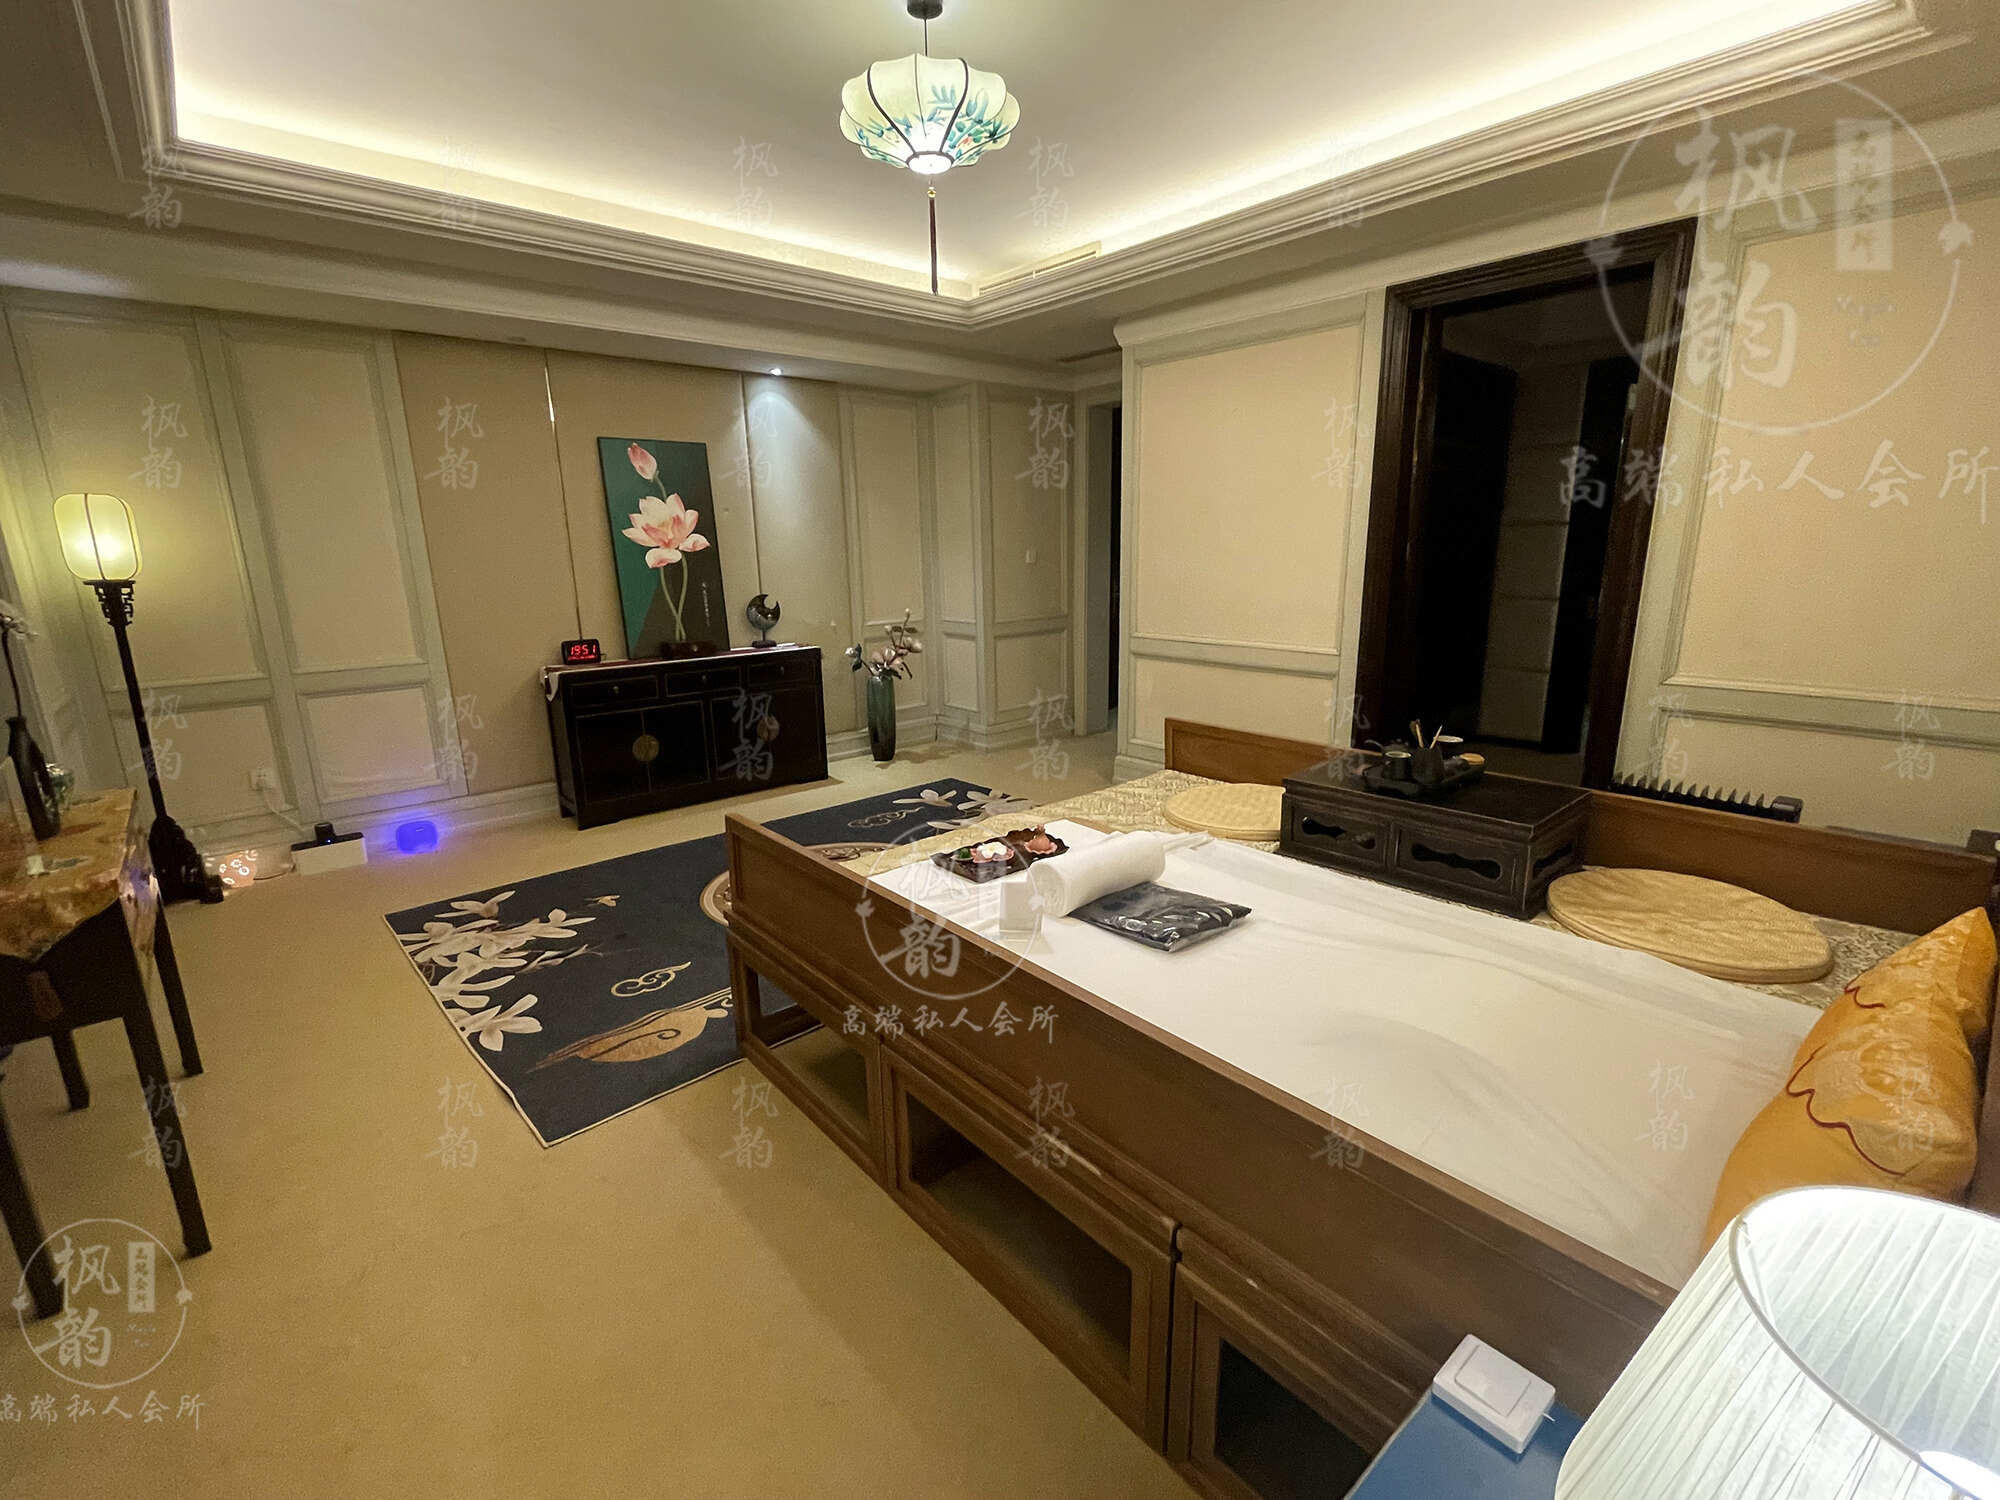 惠州天津渔阳鼓楼人气优选沐足会馆房间也很干净，舒适的spa体验